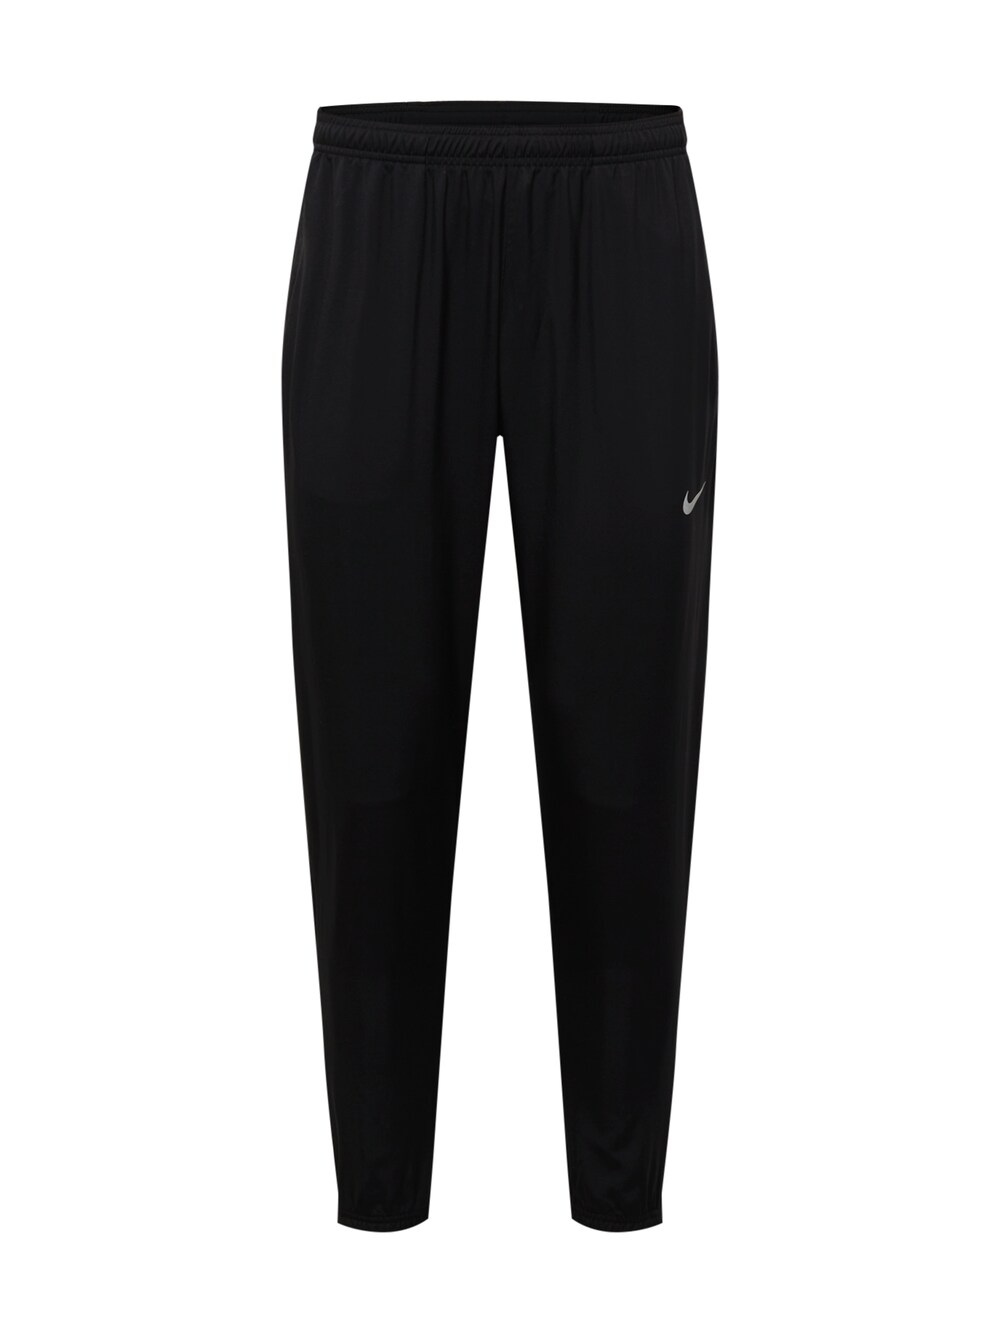 Зауженные тренировочные брюки Nike Challenger, черный